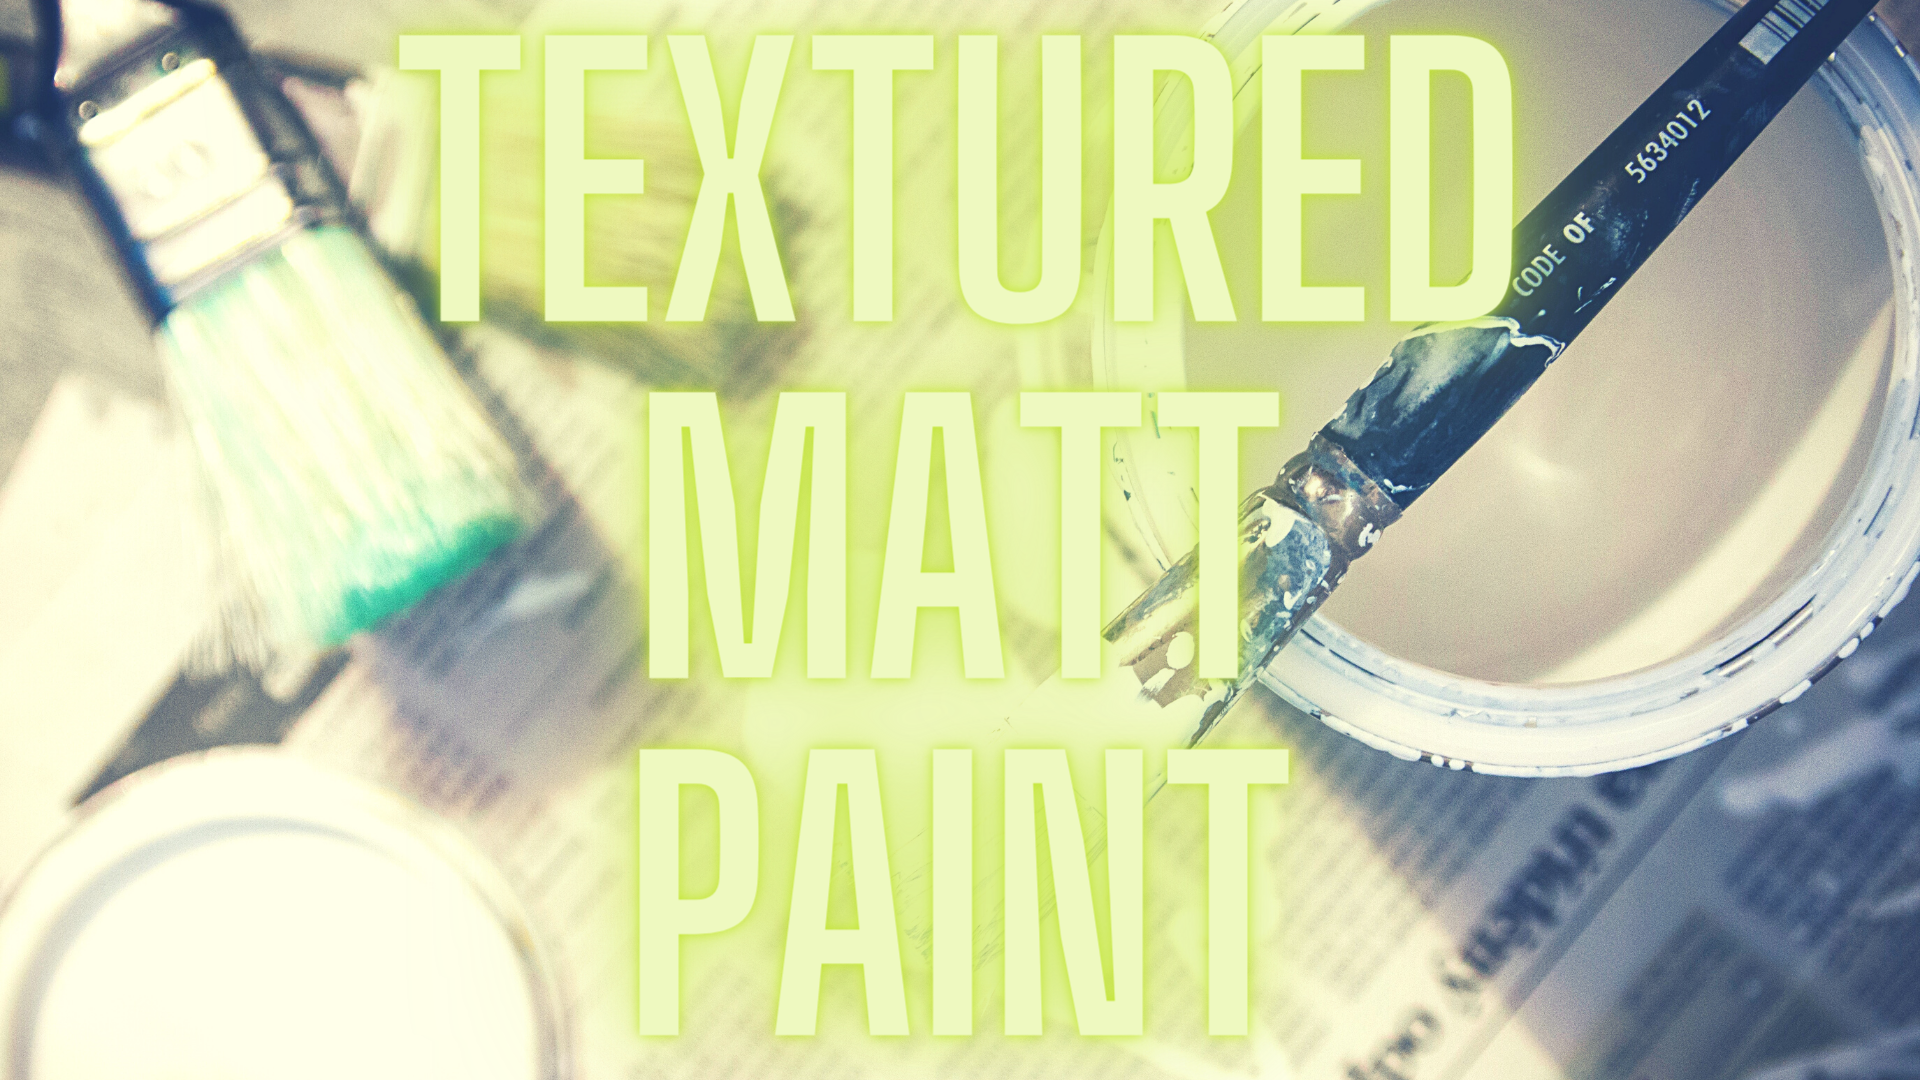 Textured Matt Paint Production